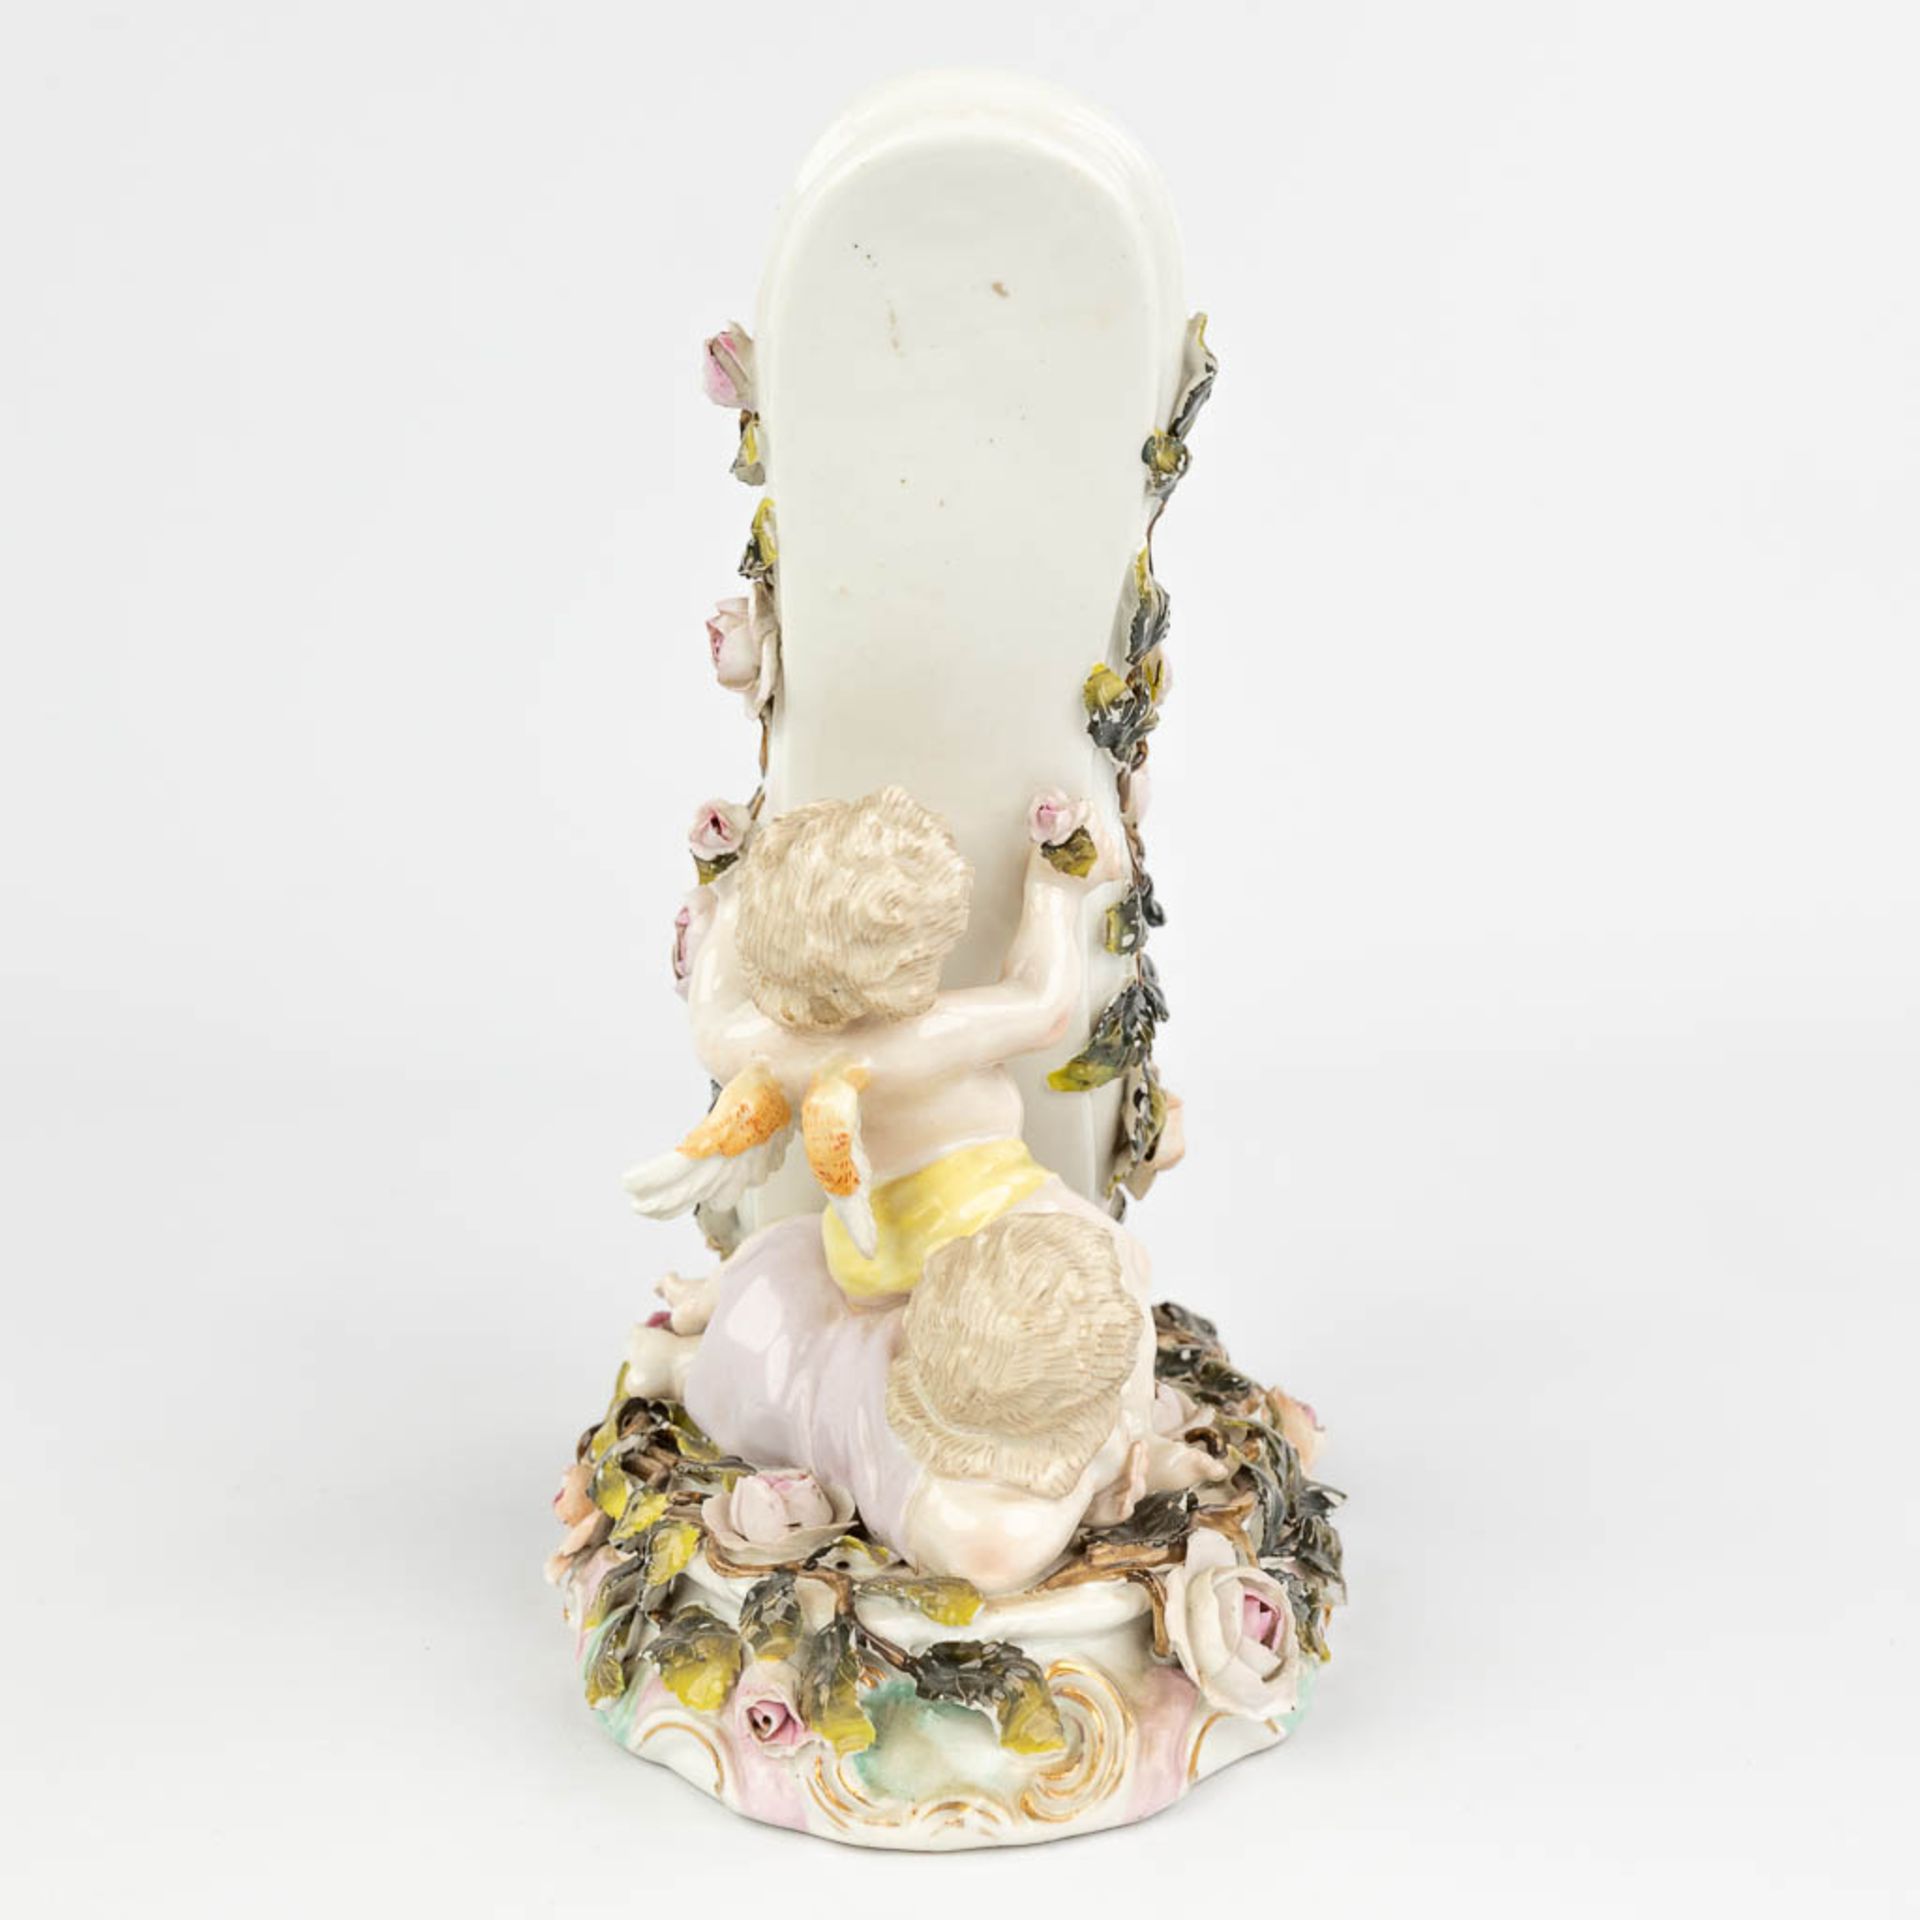 Sitzendorf & 'Royal Vienna' a set of 2 porcelain items. (L:12 x W:20 x H:23 cm) - Image 5 of 22